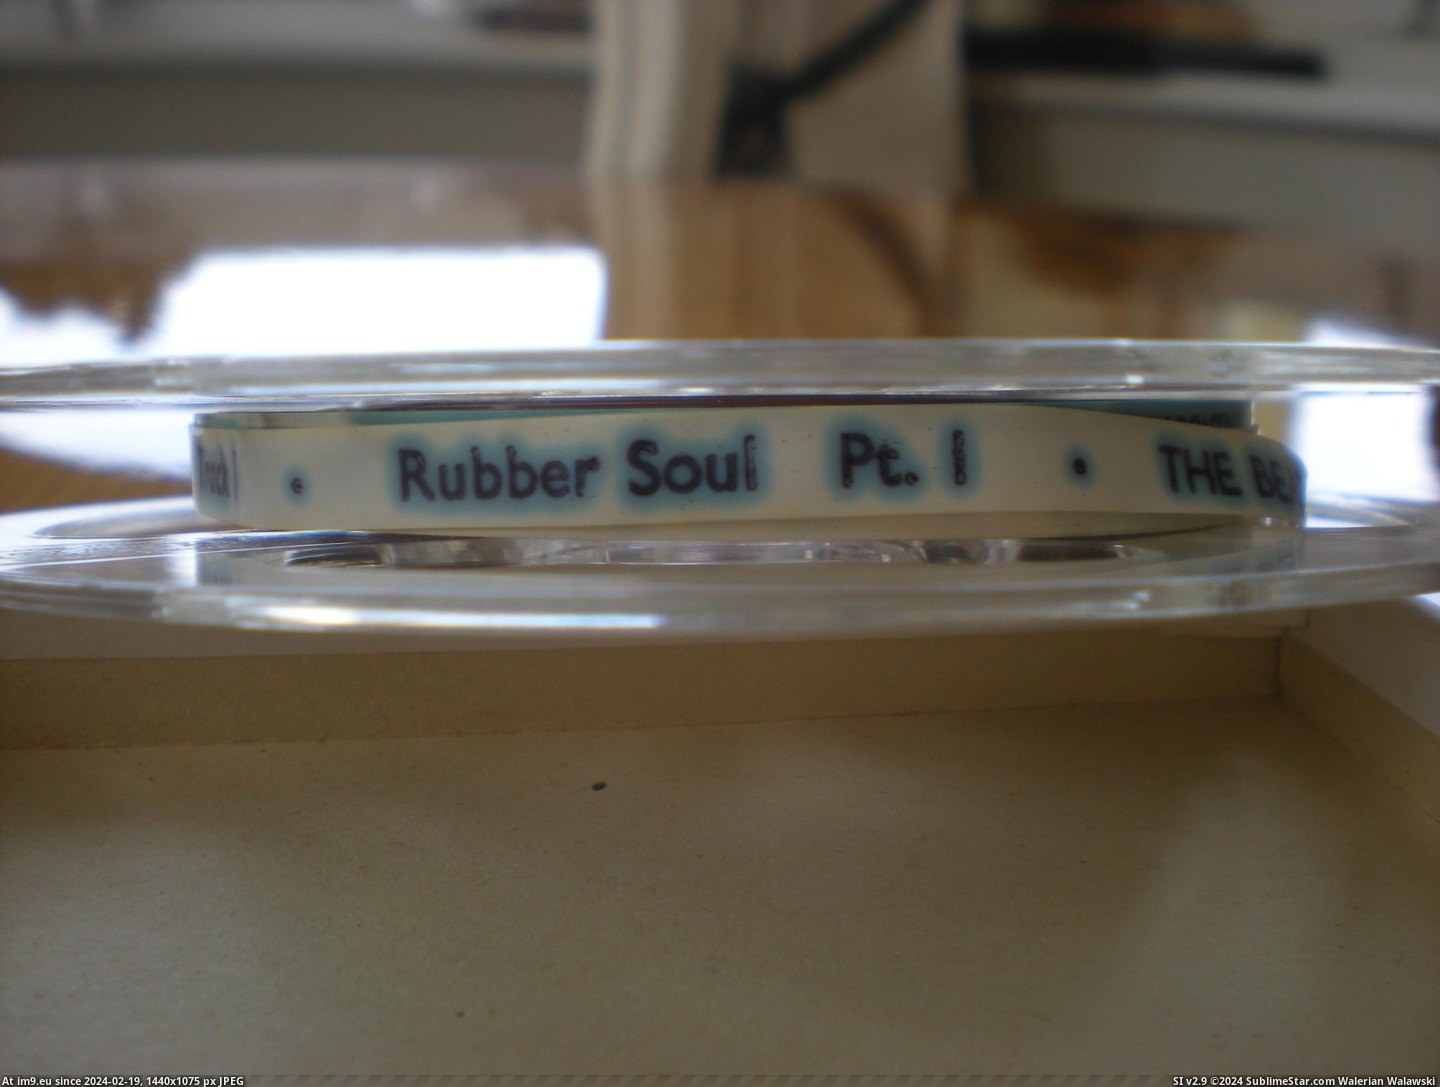 #Rubber #Soul #Reel Rubber Soul Reel 2 Pic. (Изображение из альбом new 1))